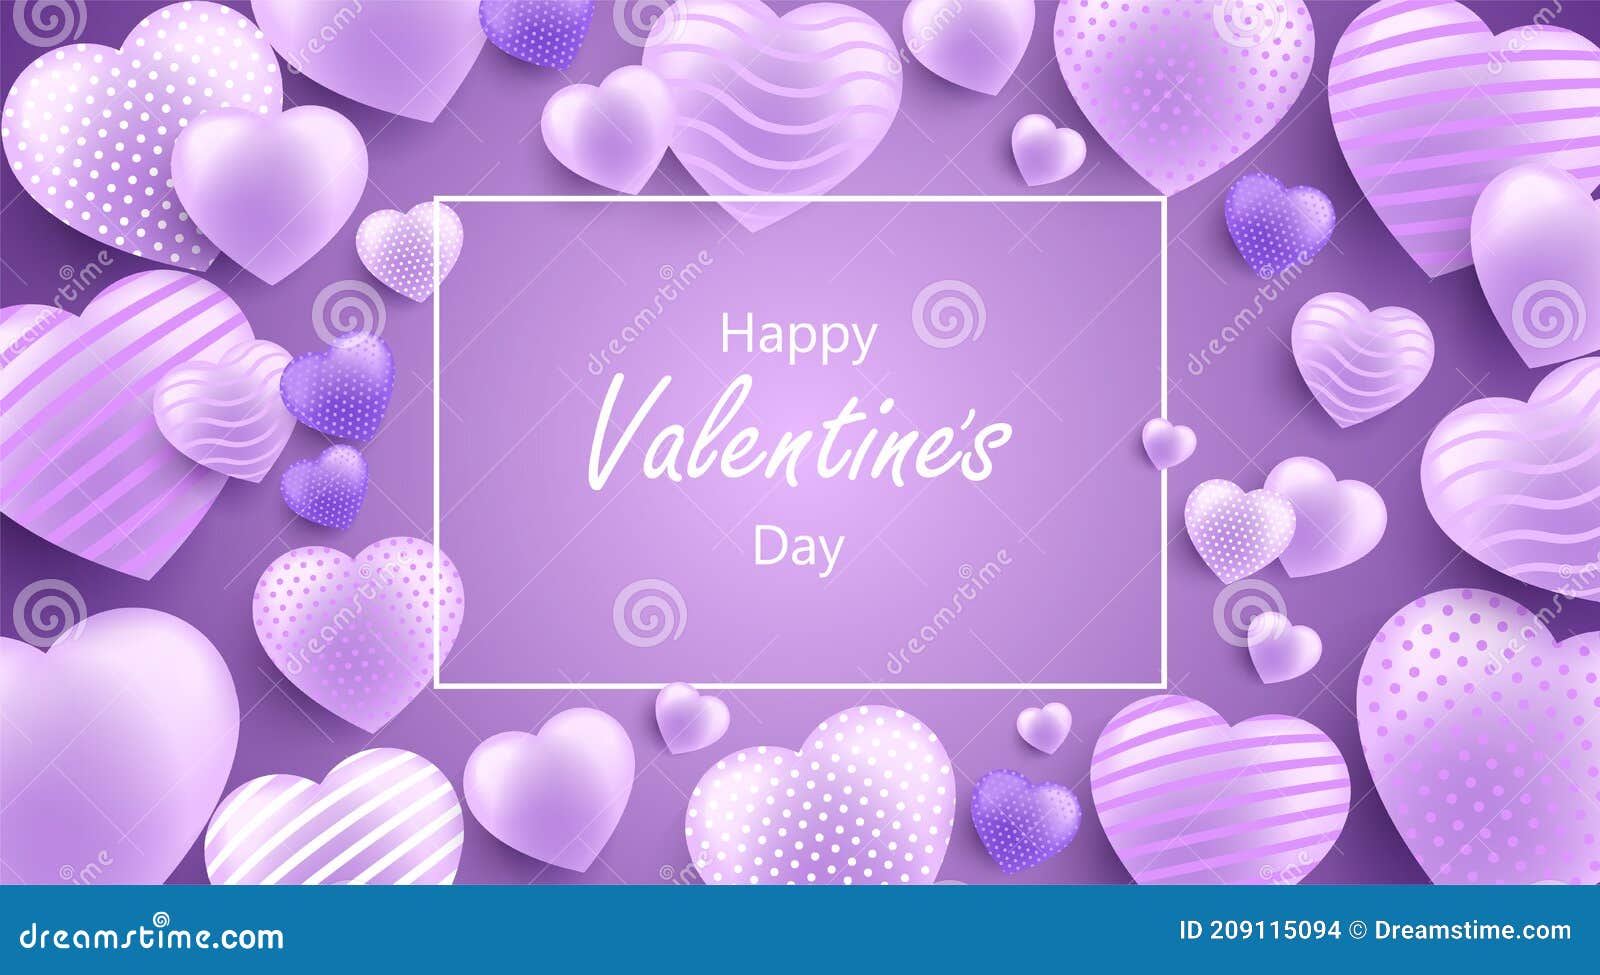 Màu tím là màu của tình yêu và sự trang trọng. Hãy khám phá hình nền đầy sắc màu với từ vựng chúc mừng Ngày Valentine và những trái tim 3D đầy thuyết phục. Hãy giúp người ấy cảm thấy đặc biệt vào Ngày Valentine với những lời chúc tốt đẹp nhất.